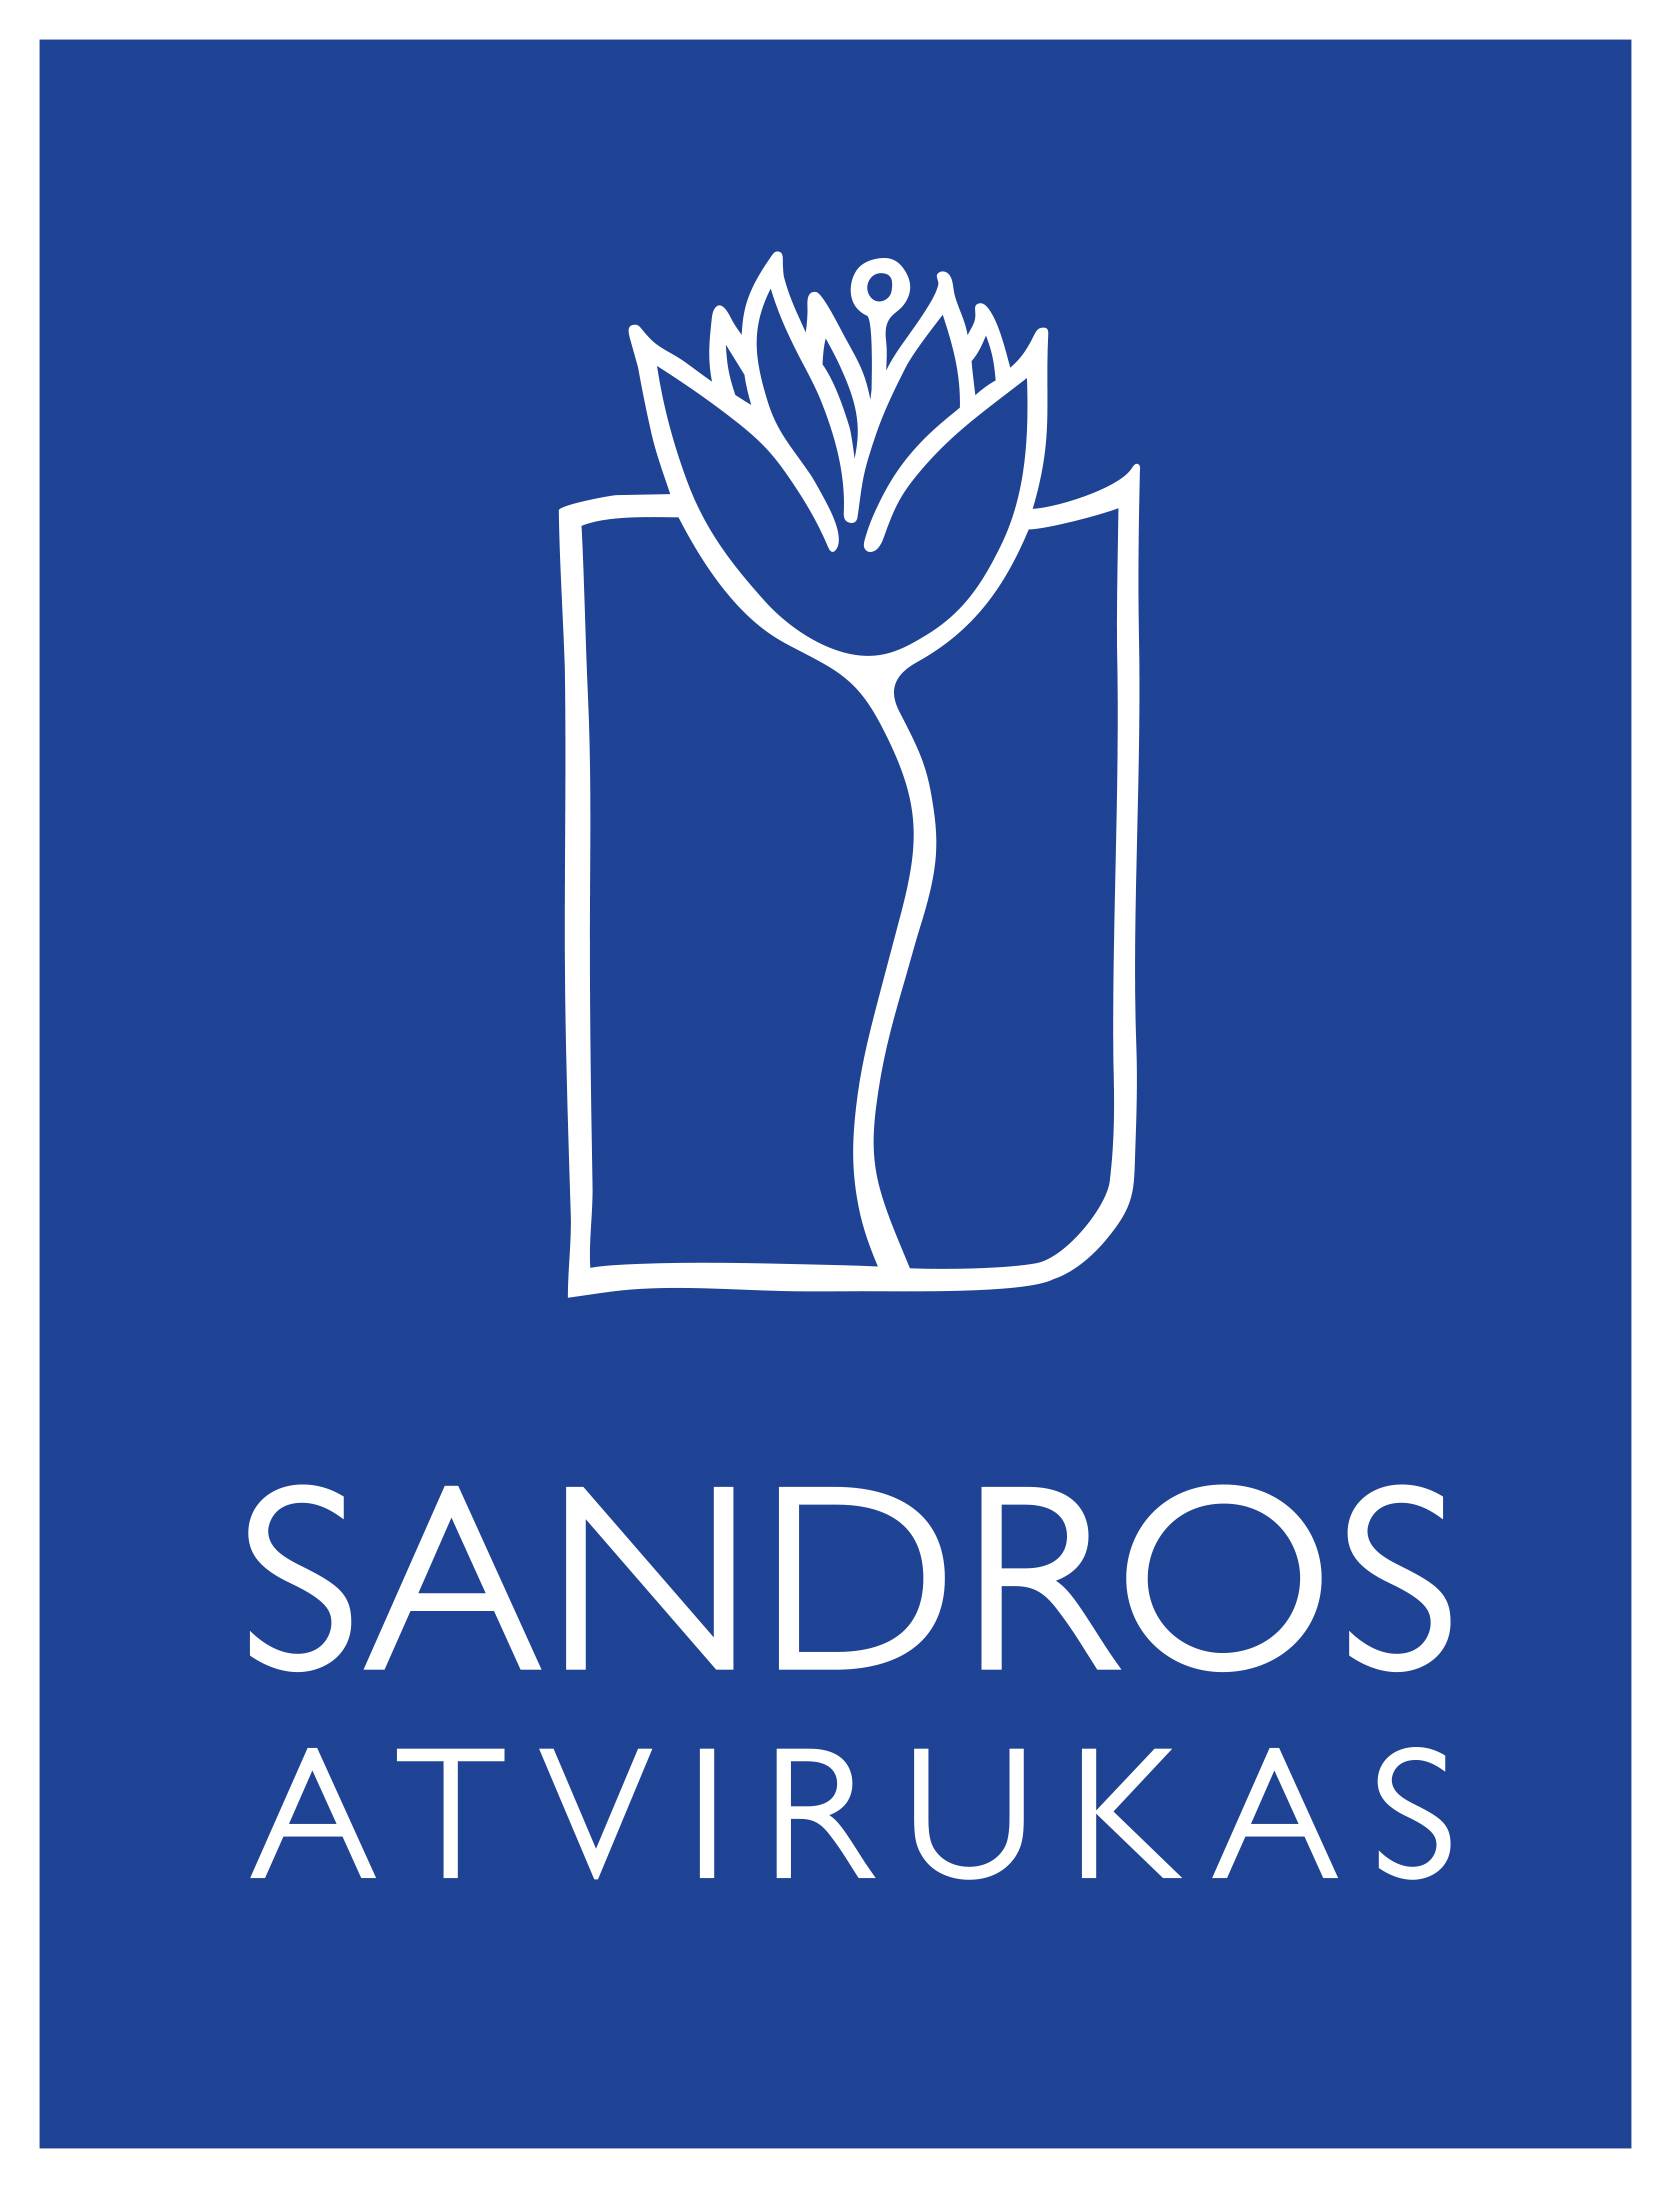 SANDROS ATVIRUKAS